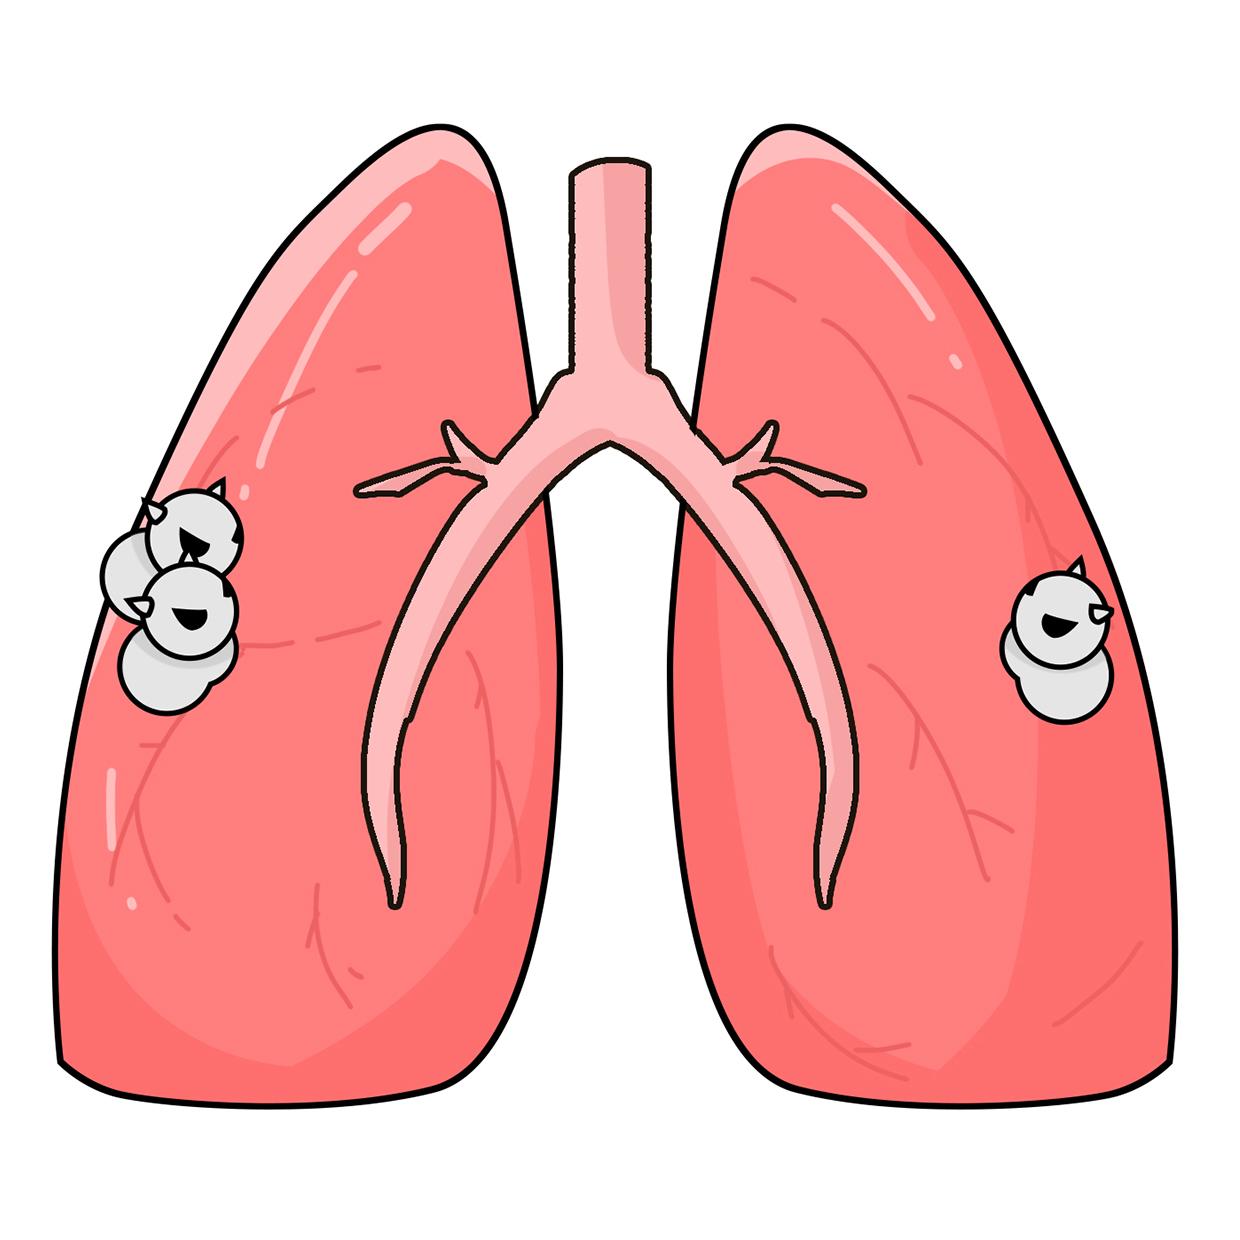 肺结节 卡通图图片